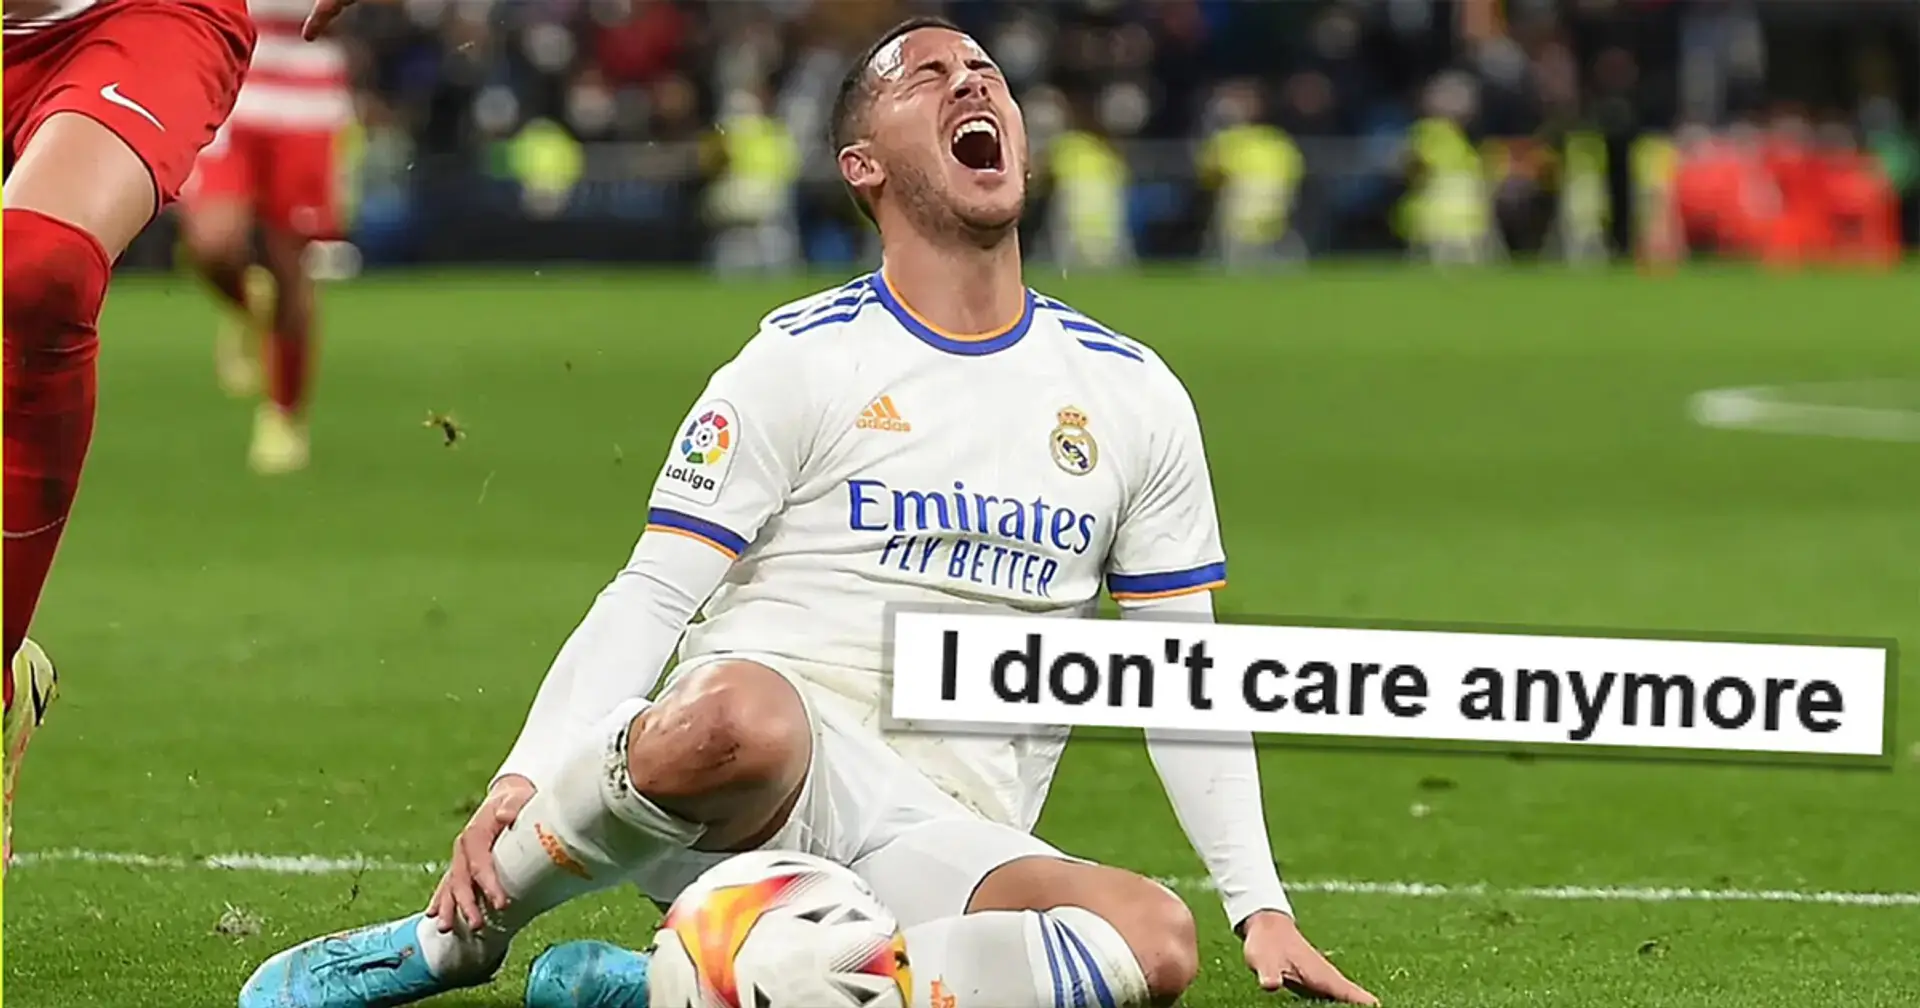 "Verkauft ihn endlich!": Hazard erneut verletzt, Fans von Real Madrid wütend  